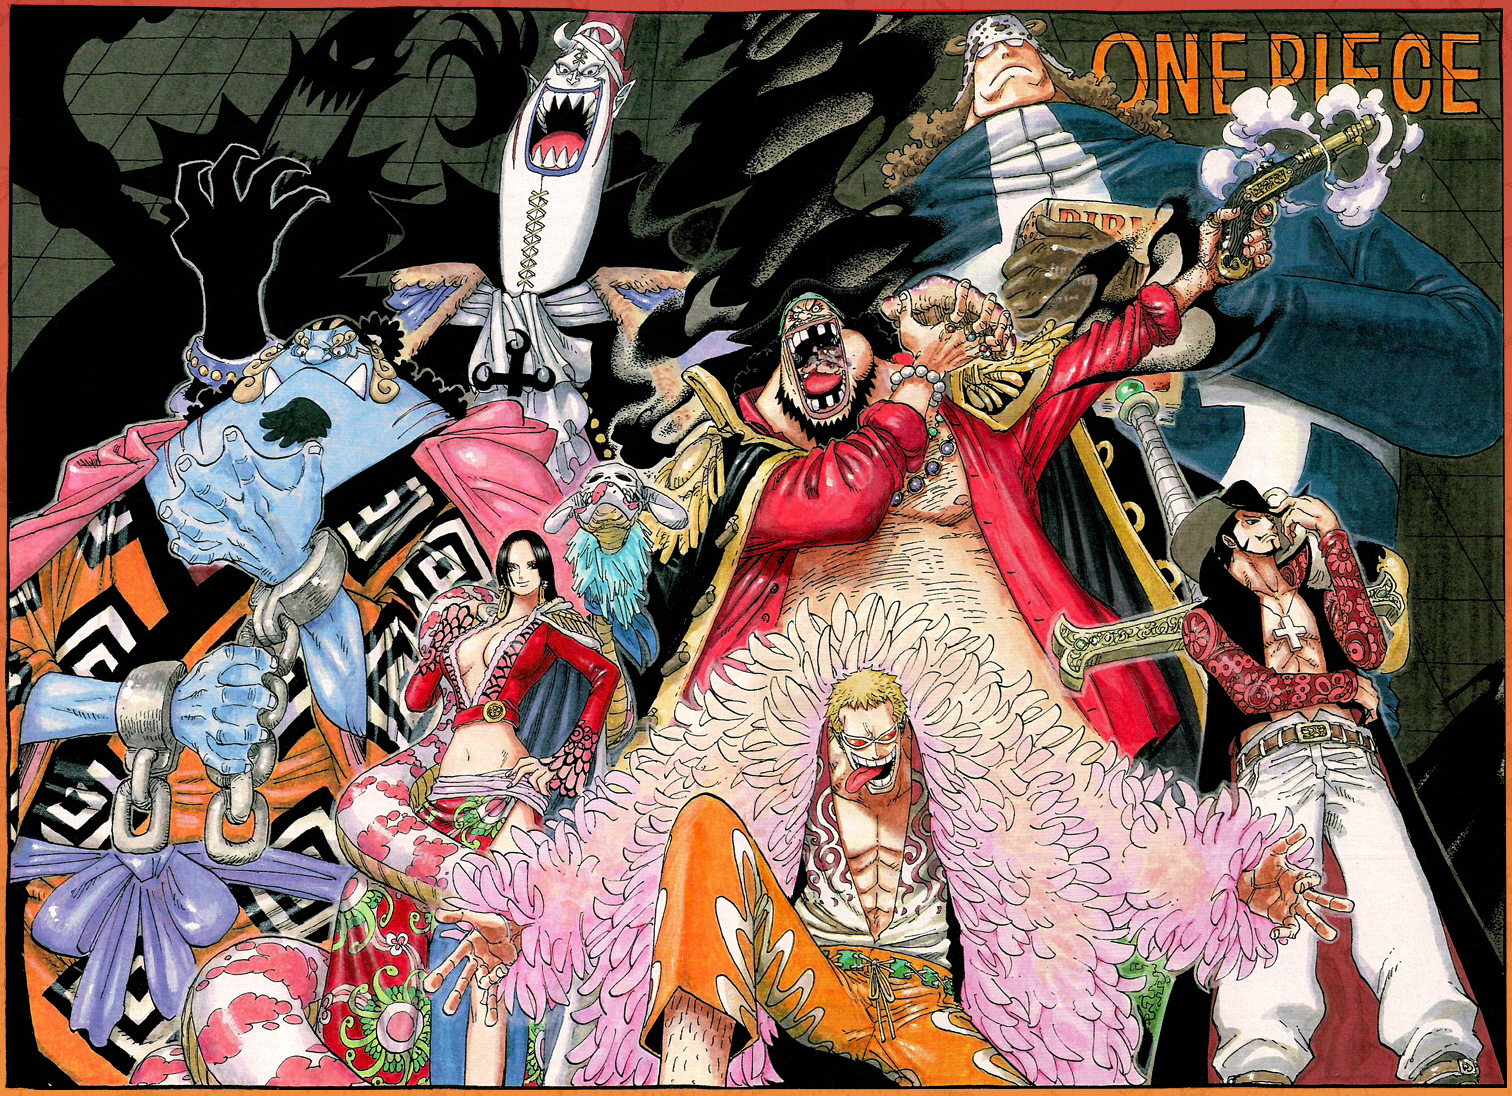 Eiichiro Oda: A trajetória do gênio por trás de One Piece - Nova Era Geek